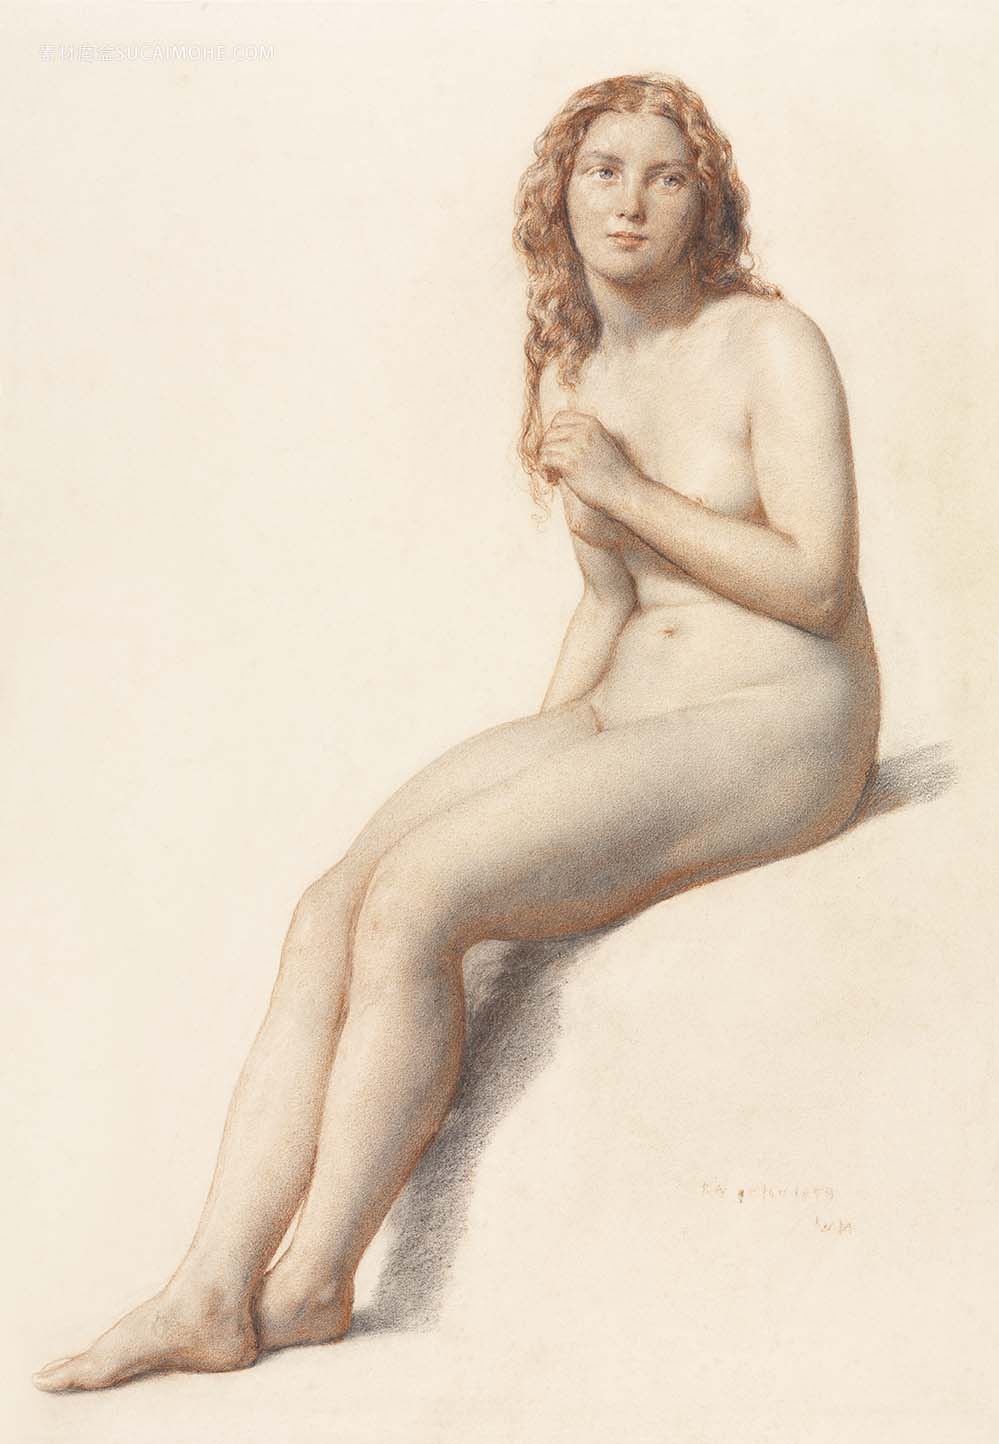 肉欲地摆在赤裸的妇女，葡萄酒色情艺术。威廉·穆里迪（William Mulready）的《坐着的裸体女性